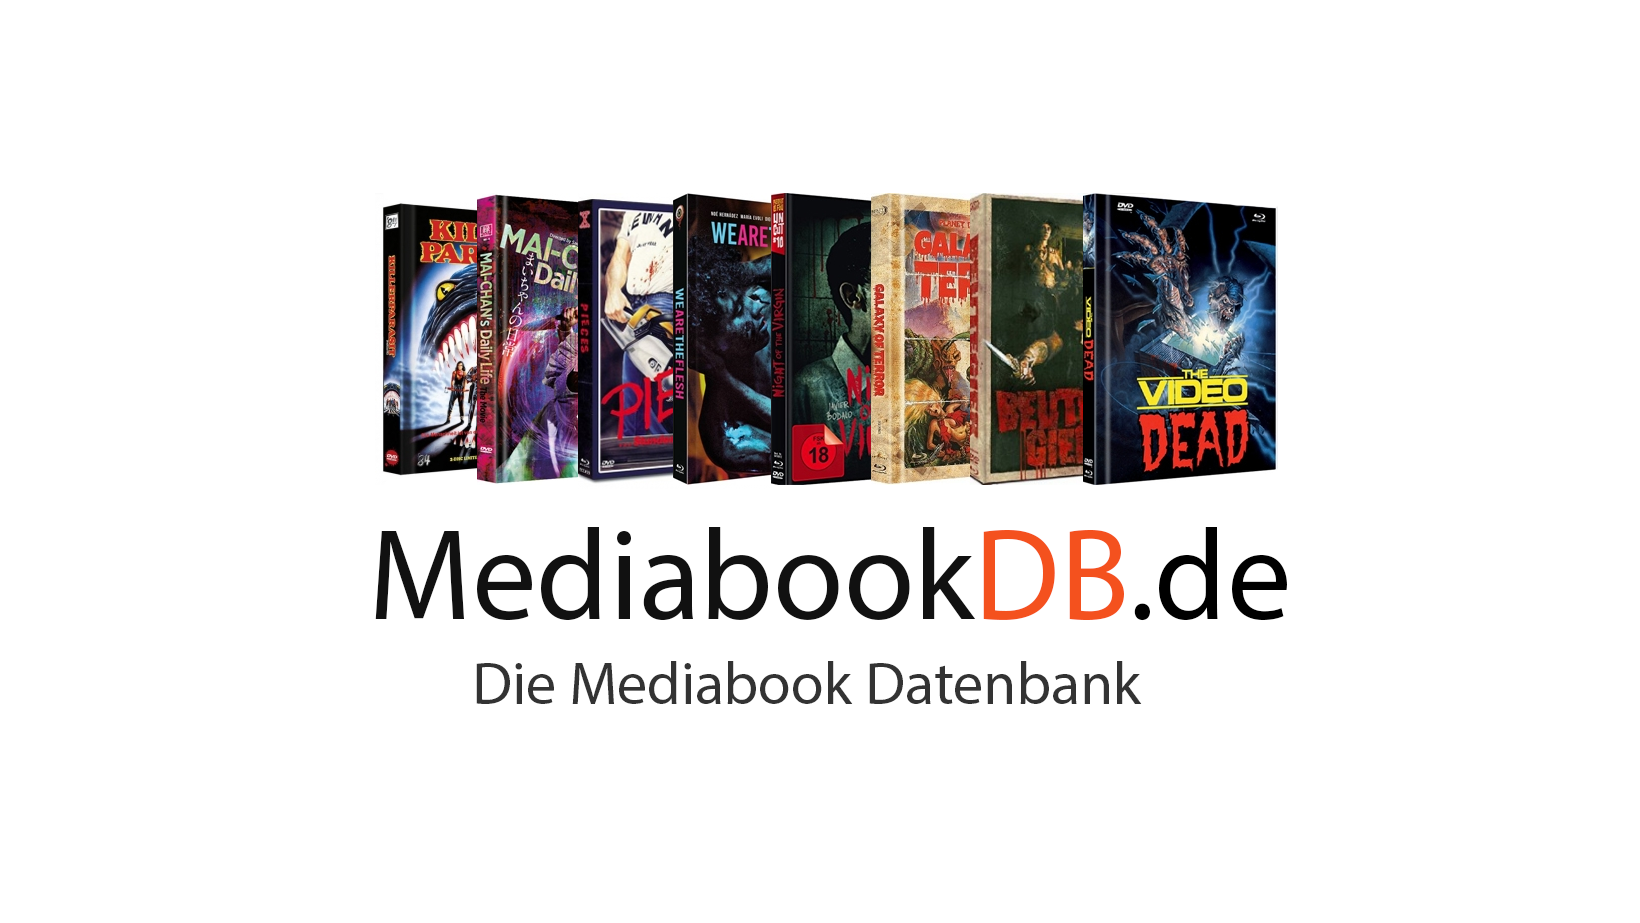 (c) Mediabookdb.de